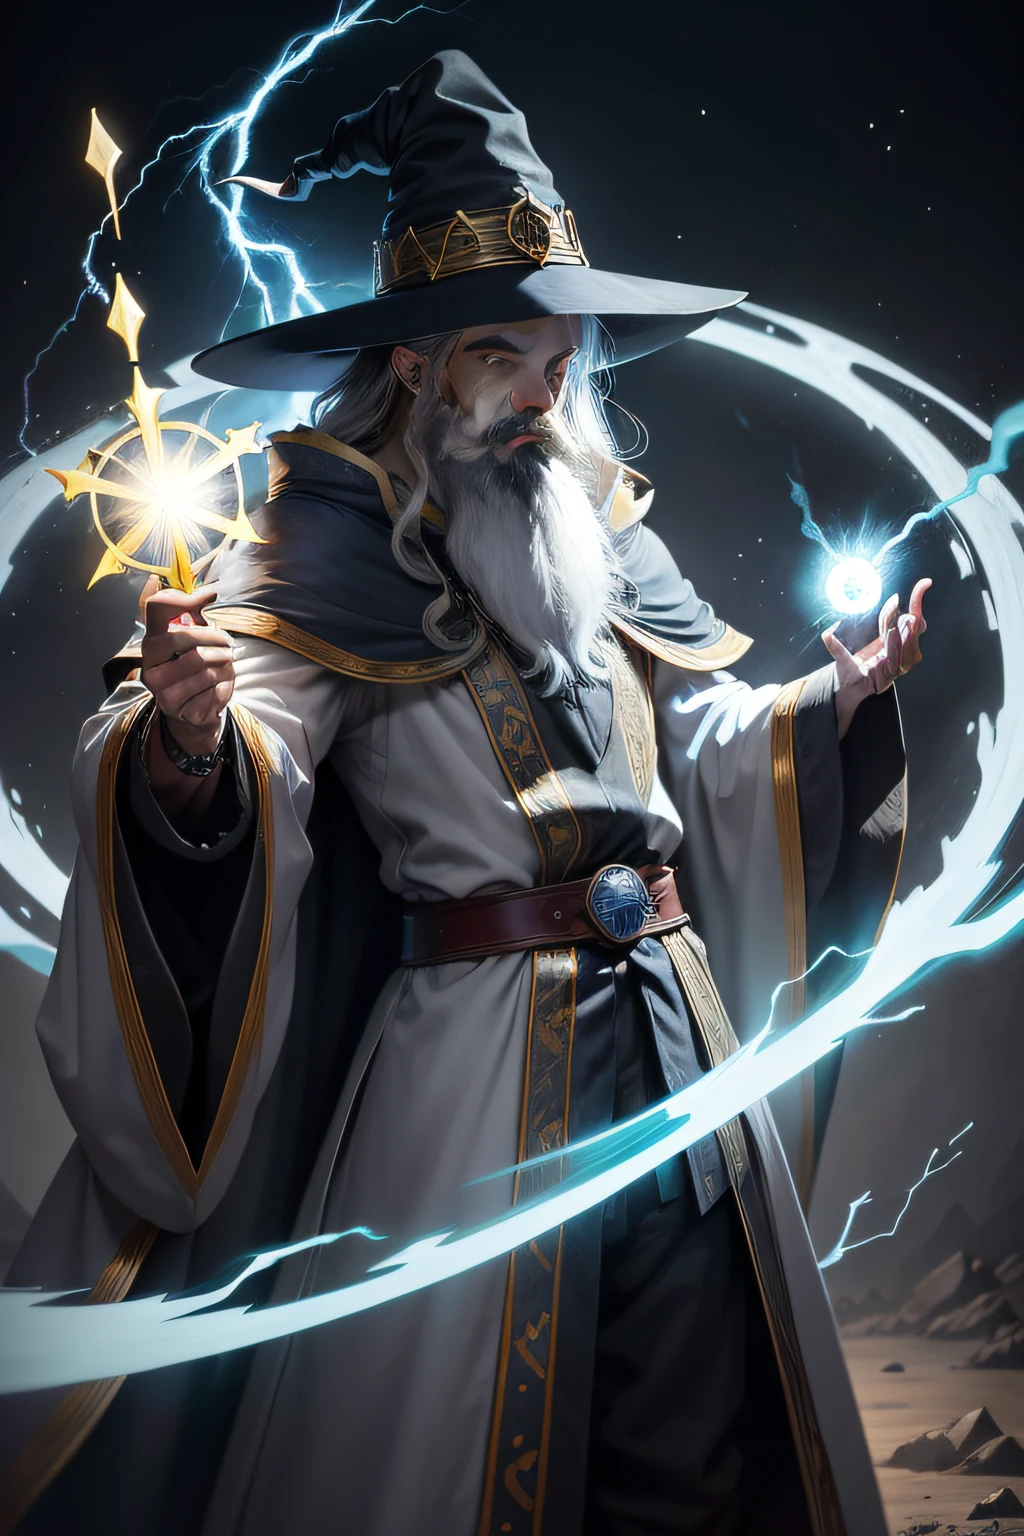 criar personagem de anime que seja um mago com barba longa, wizard's hat and gray robes, olhos azuis brilhantes, holding a yellow lightning bolt in his hands. O fundo da imagem deve ser escuro e com raios de tempestade.